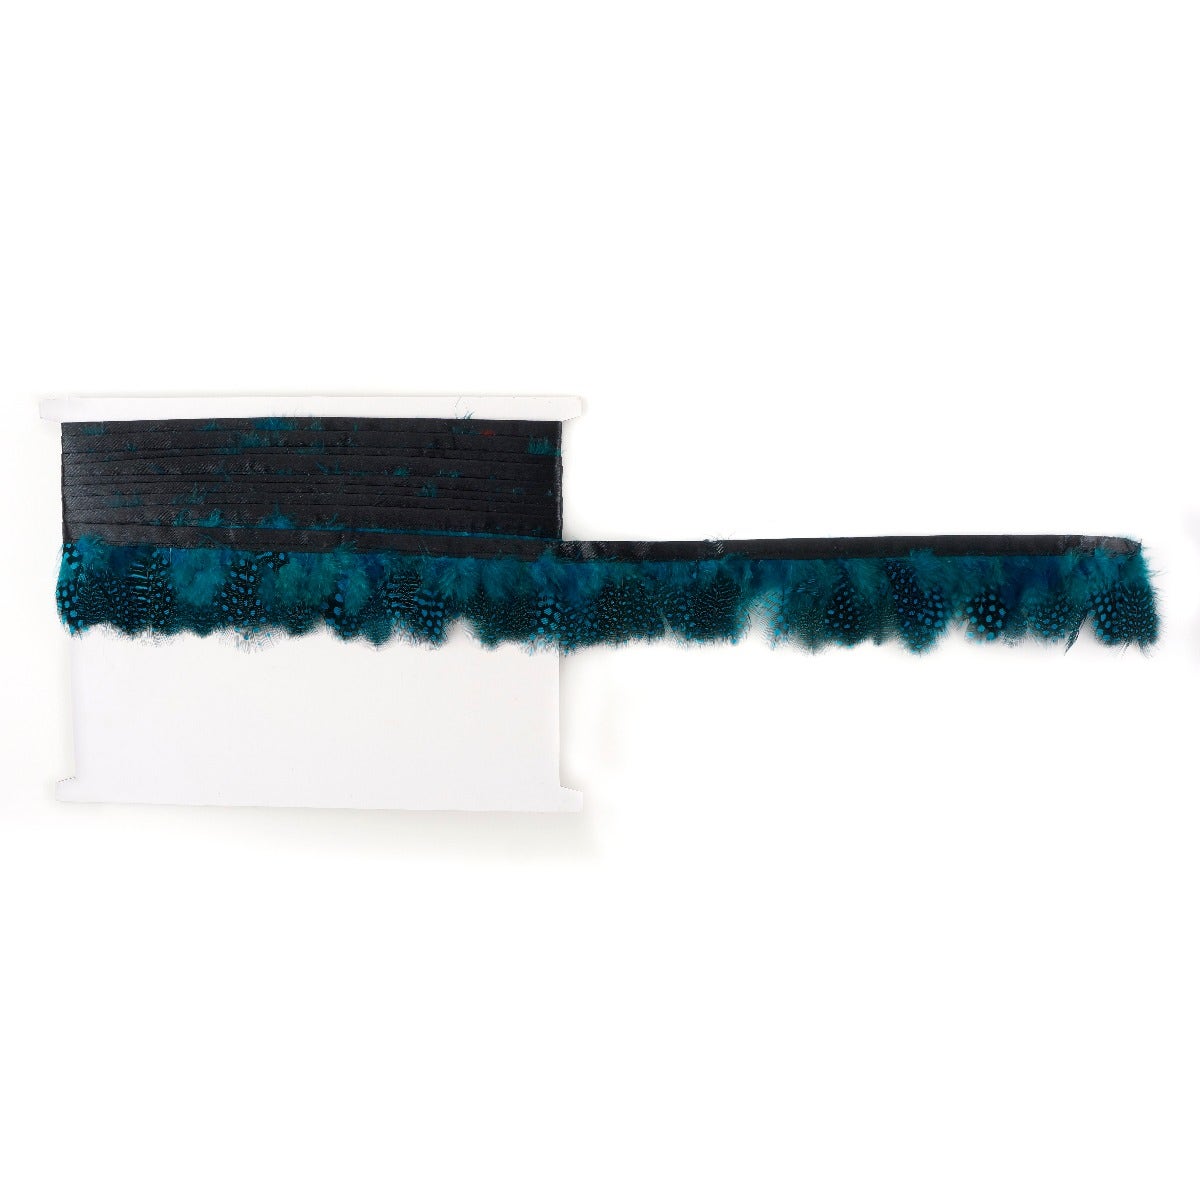 1 Yard Guinea Plumage Feather Fringe - 1.75"  - Dark Turquoise